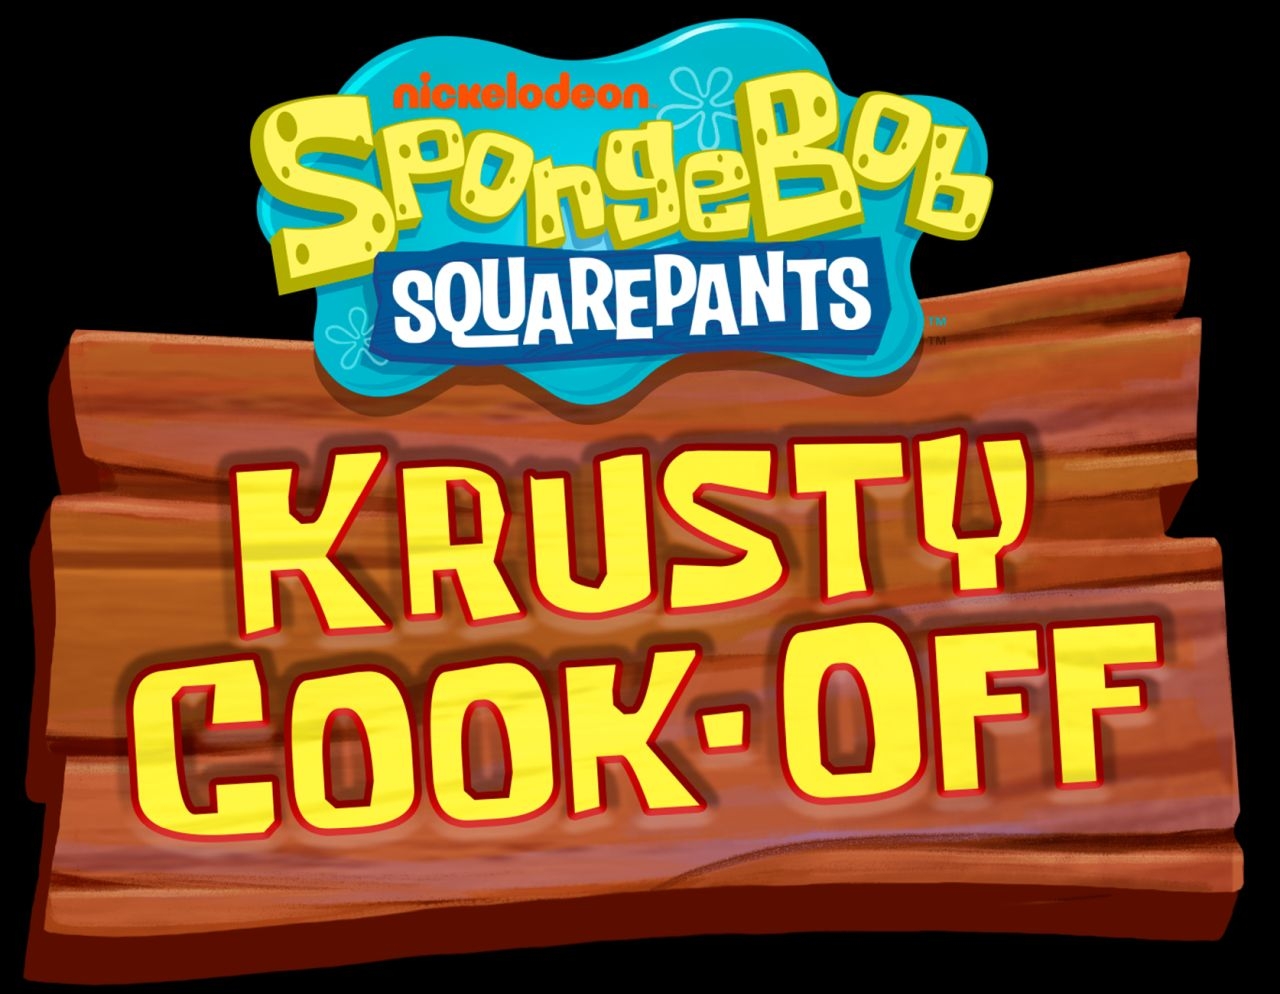 spongebob krusty cook-off game